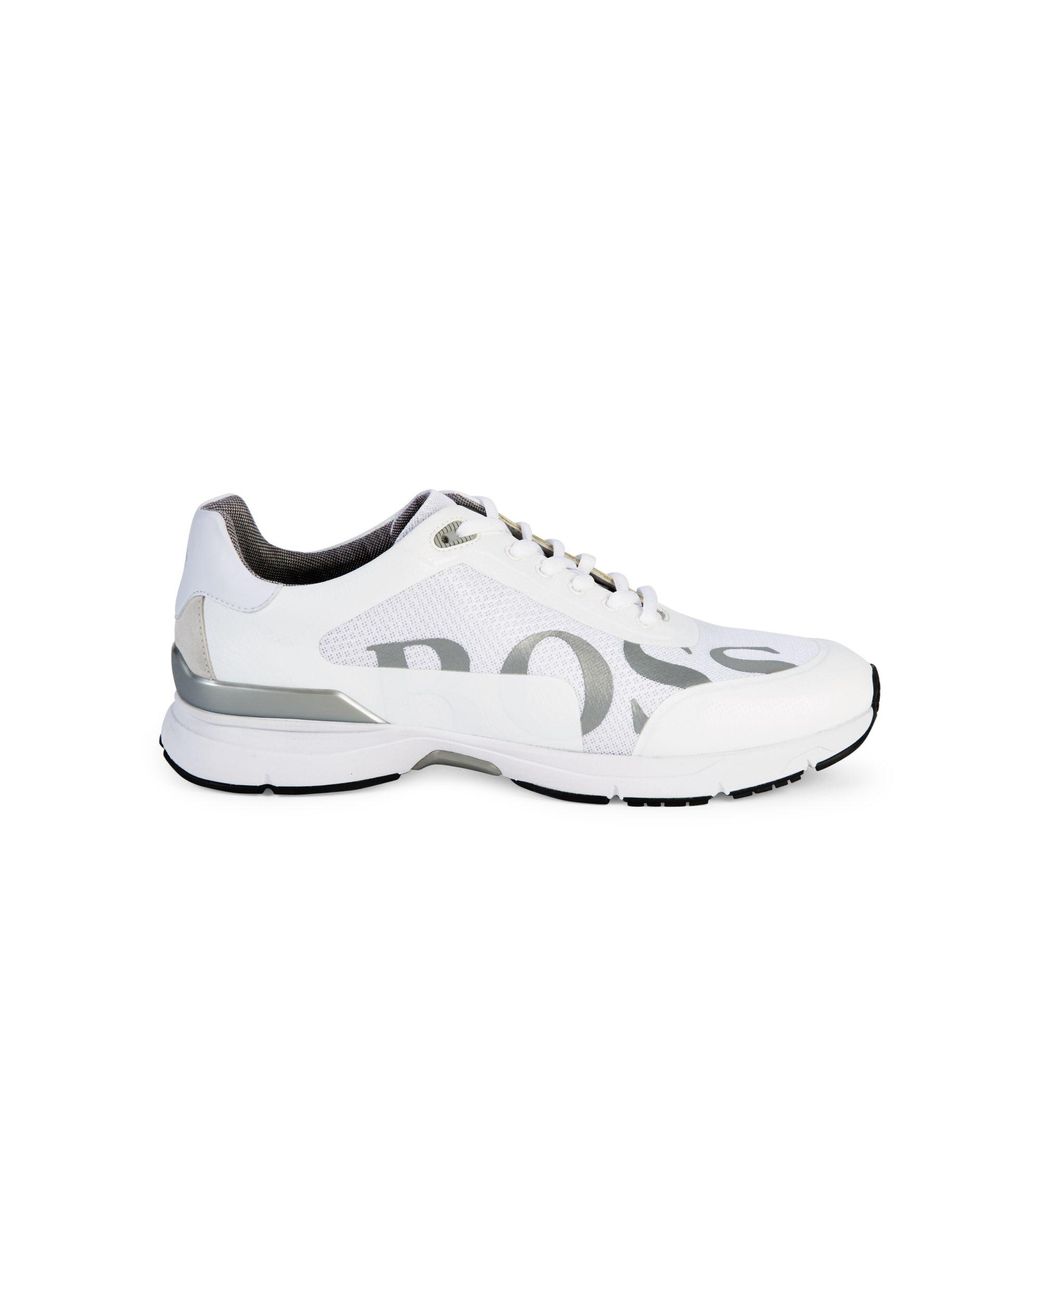 BOSS by HUGO BOSS Velocity Running Sneakers in White for Men | Lyst